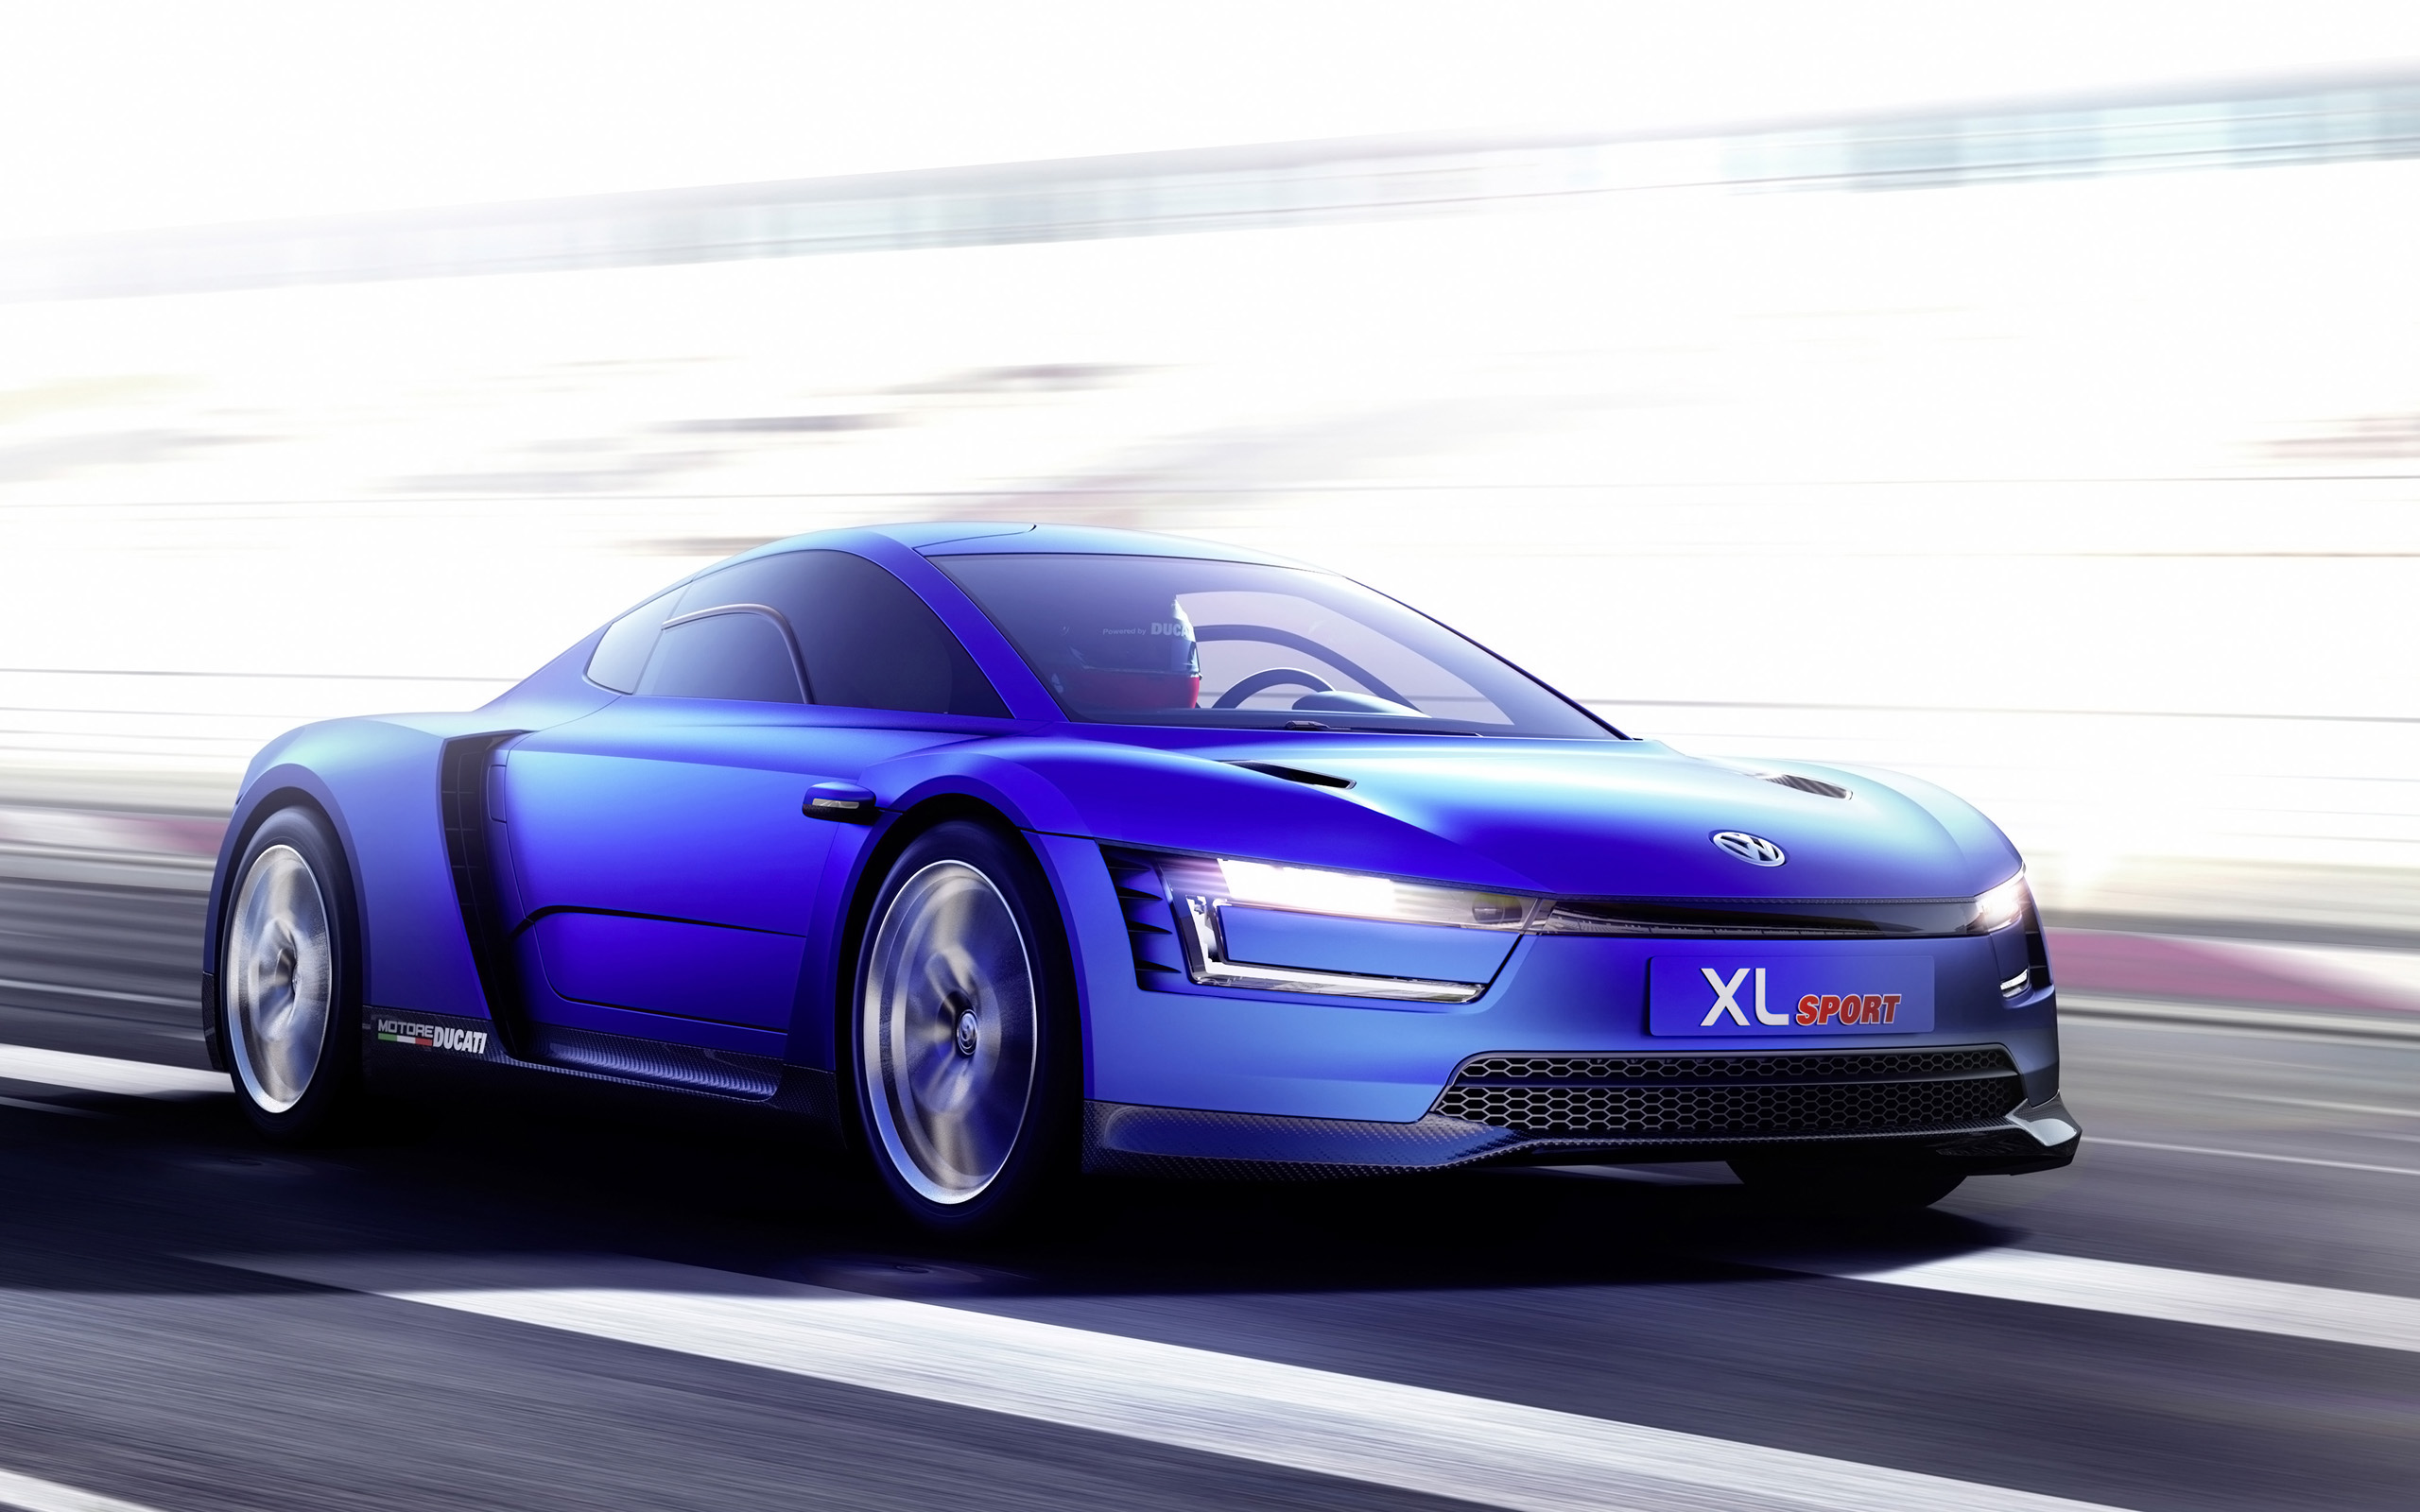 Los mejores fondos de pantalla de Volkswagen Xl para la pantalla del teléfono